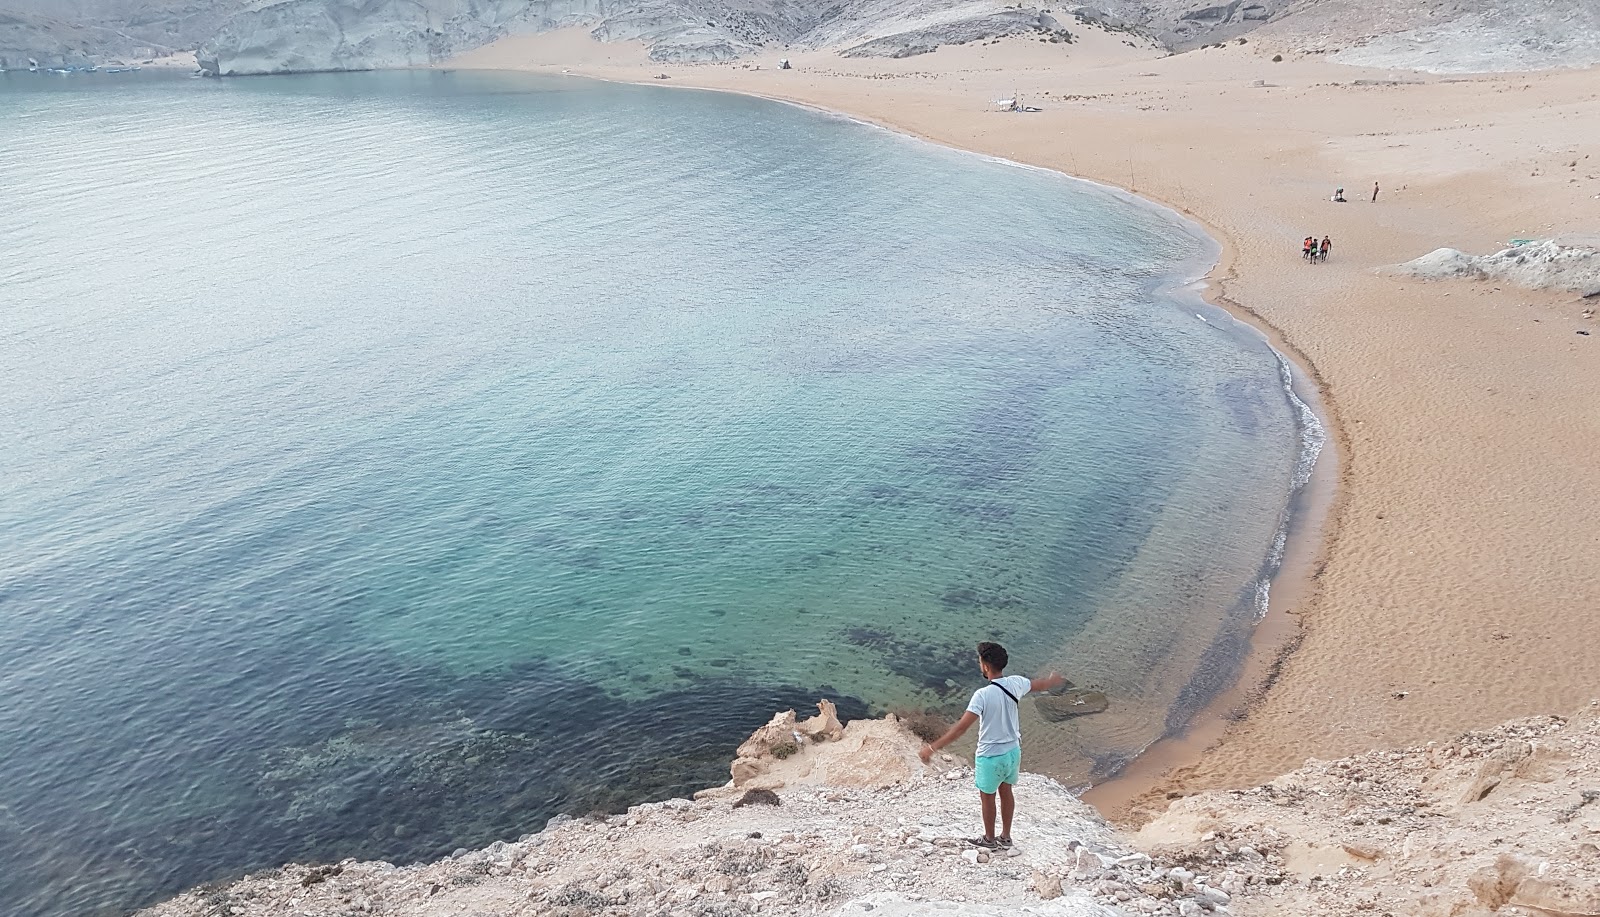 Fotografie cu Charrana beach cu o suprafață de apa pură turcoaz